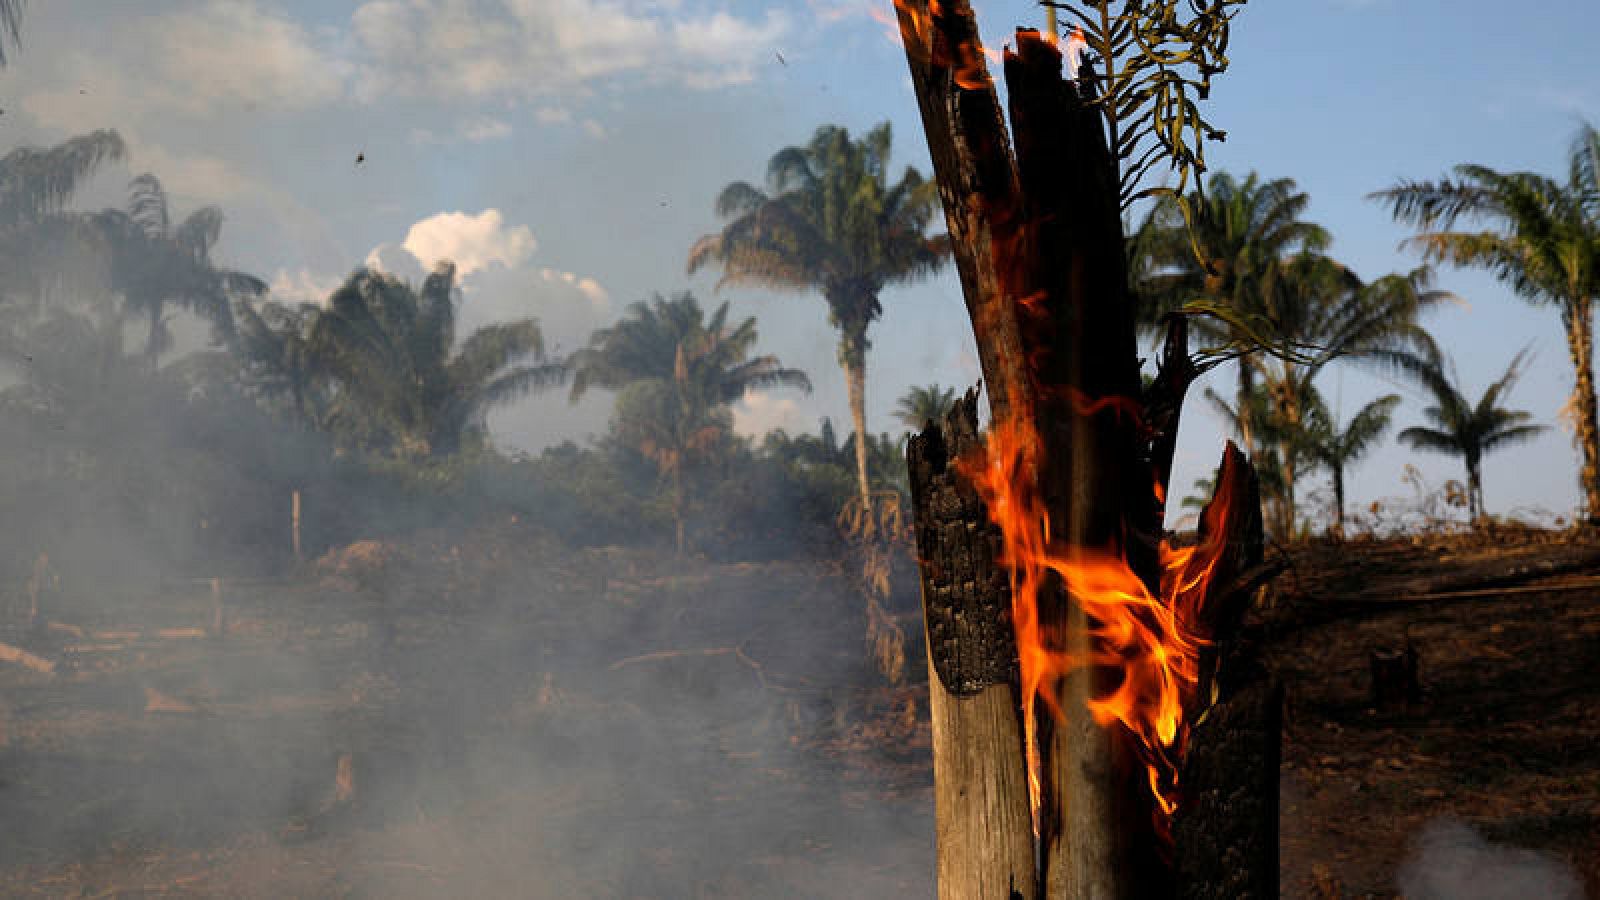 Incendio en un área de selva amazónica deforestada por leñadores y agricultores en Iranduba, estado de Amazonas, Brasil, el 20 de agosto de 2019. REUTERS/Bruno Kelly